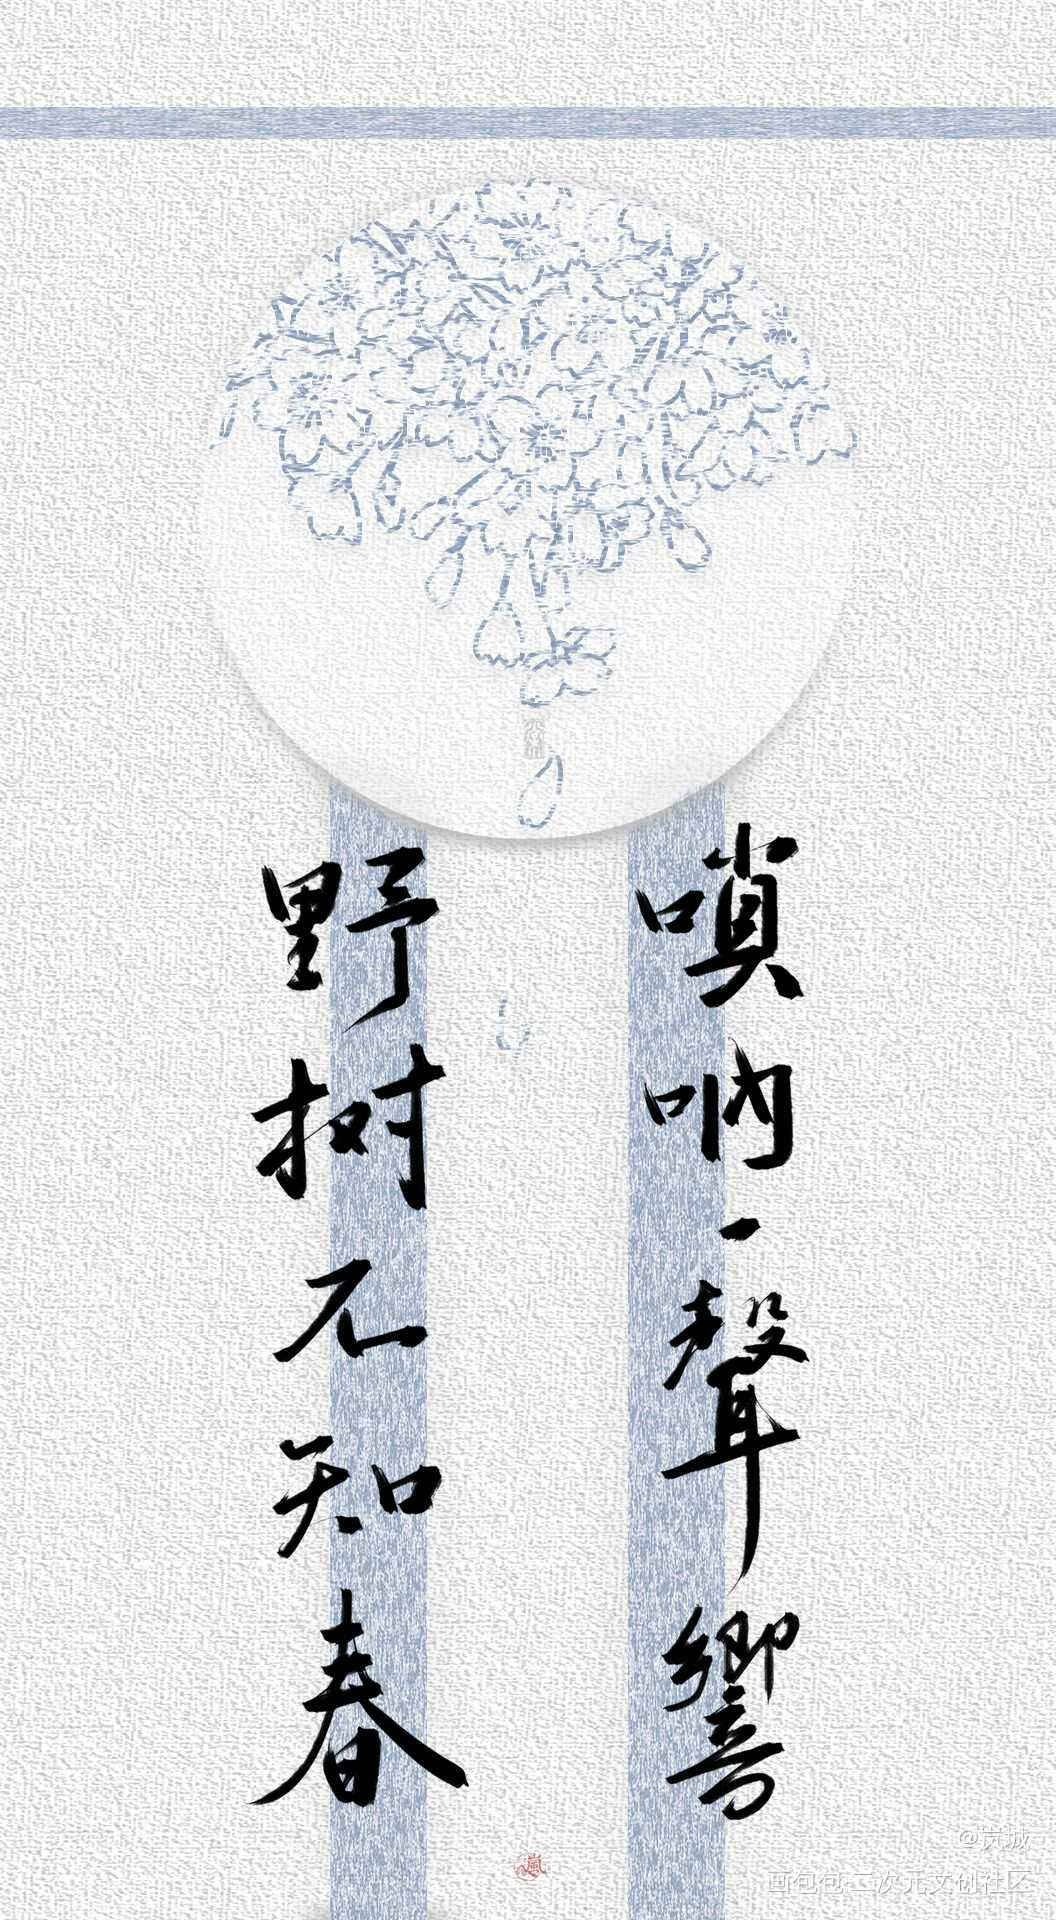 「唢呐一声响，野树不知春」_判官字体设计板写木苏里绘画作品